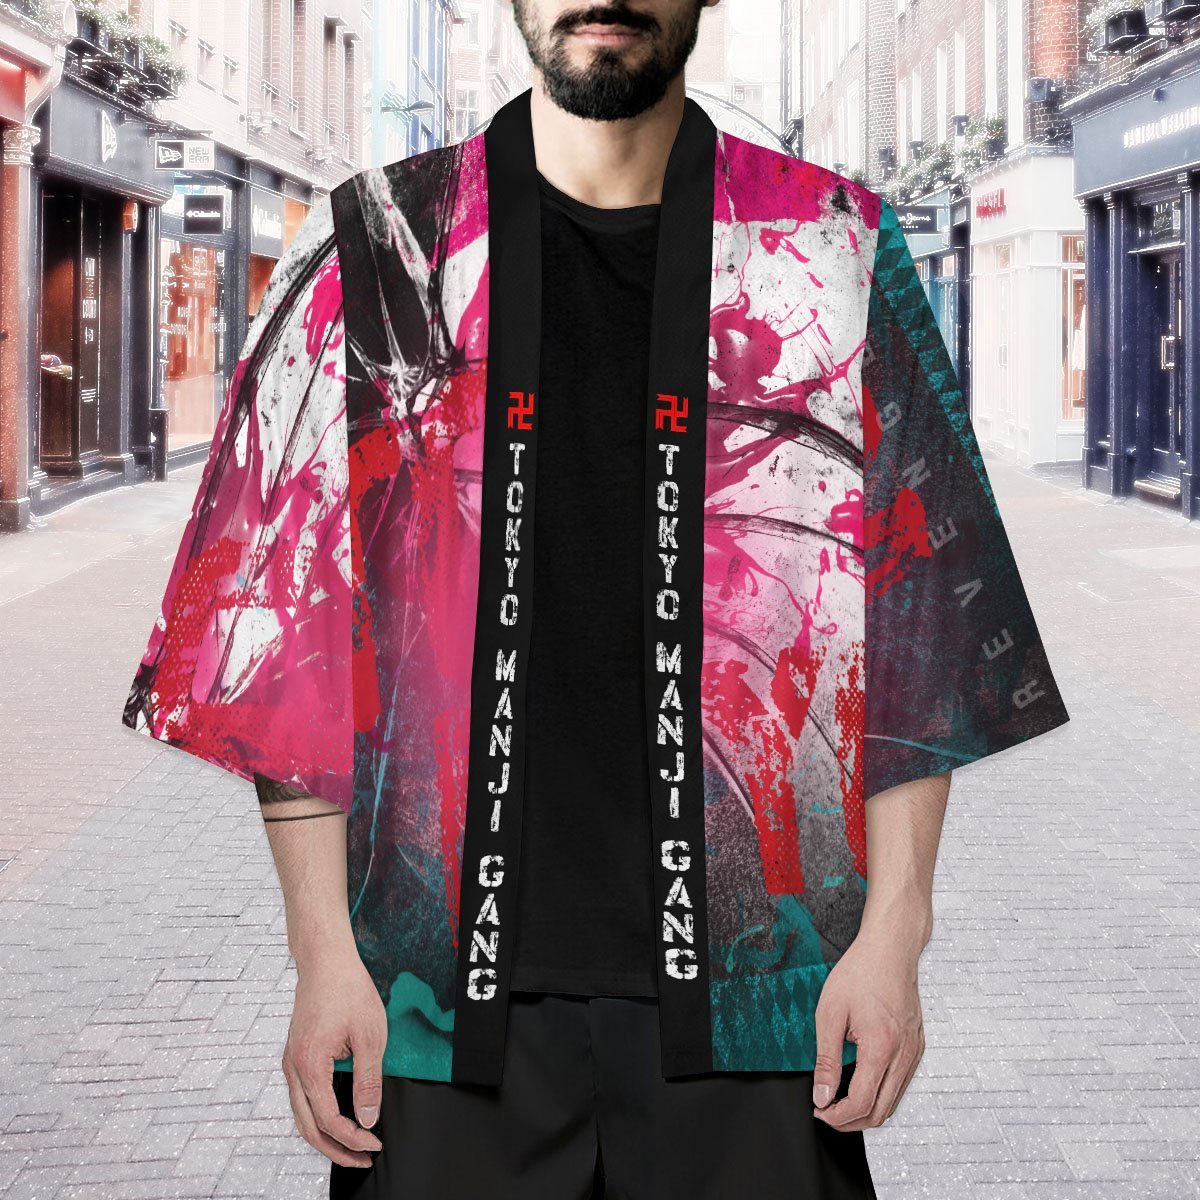 4XL Official Anime Kimono Merch